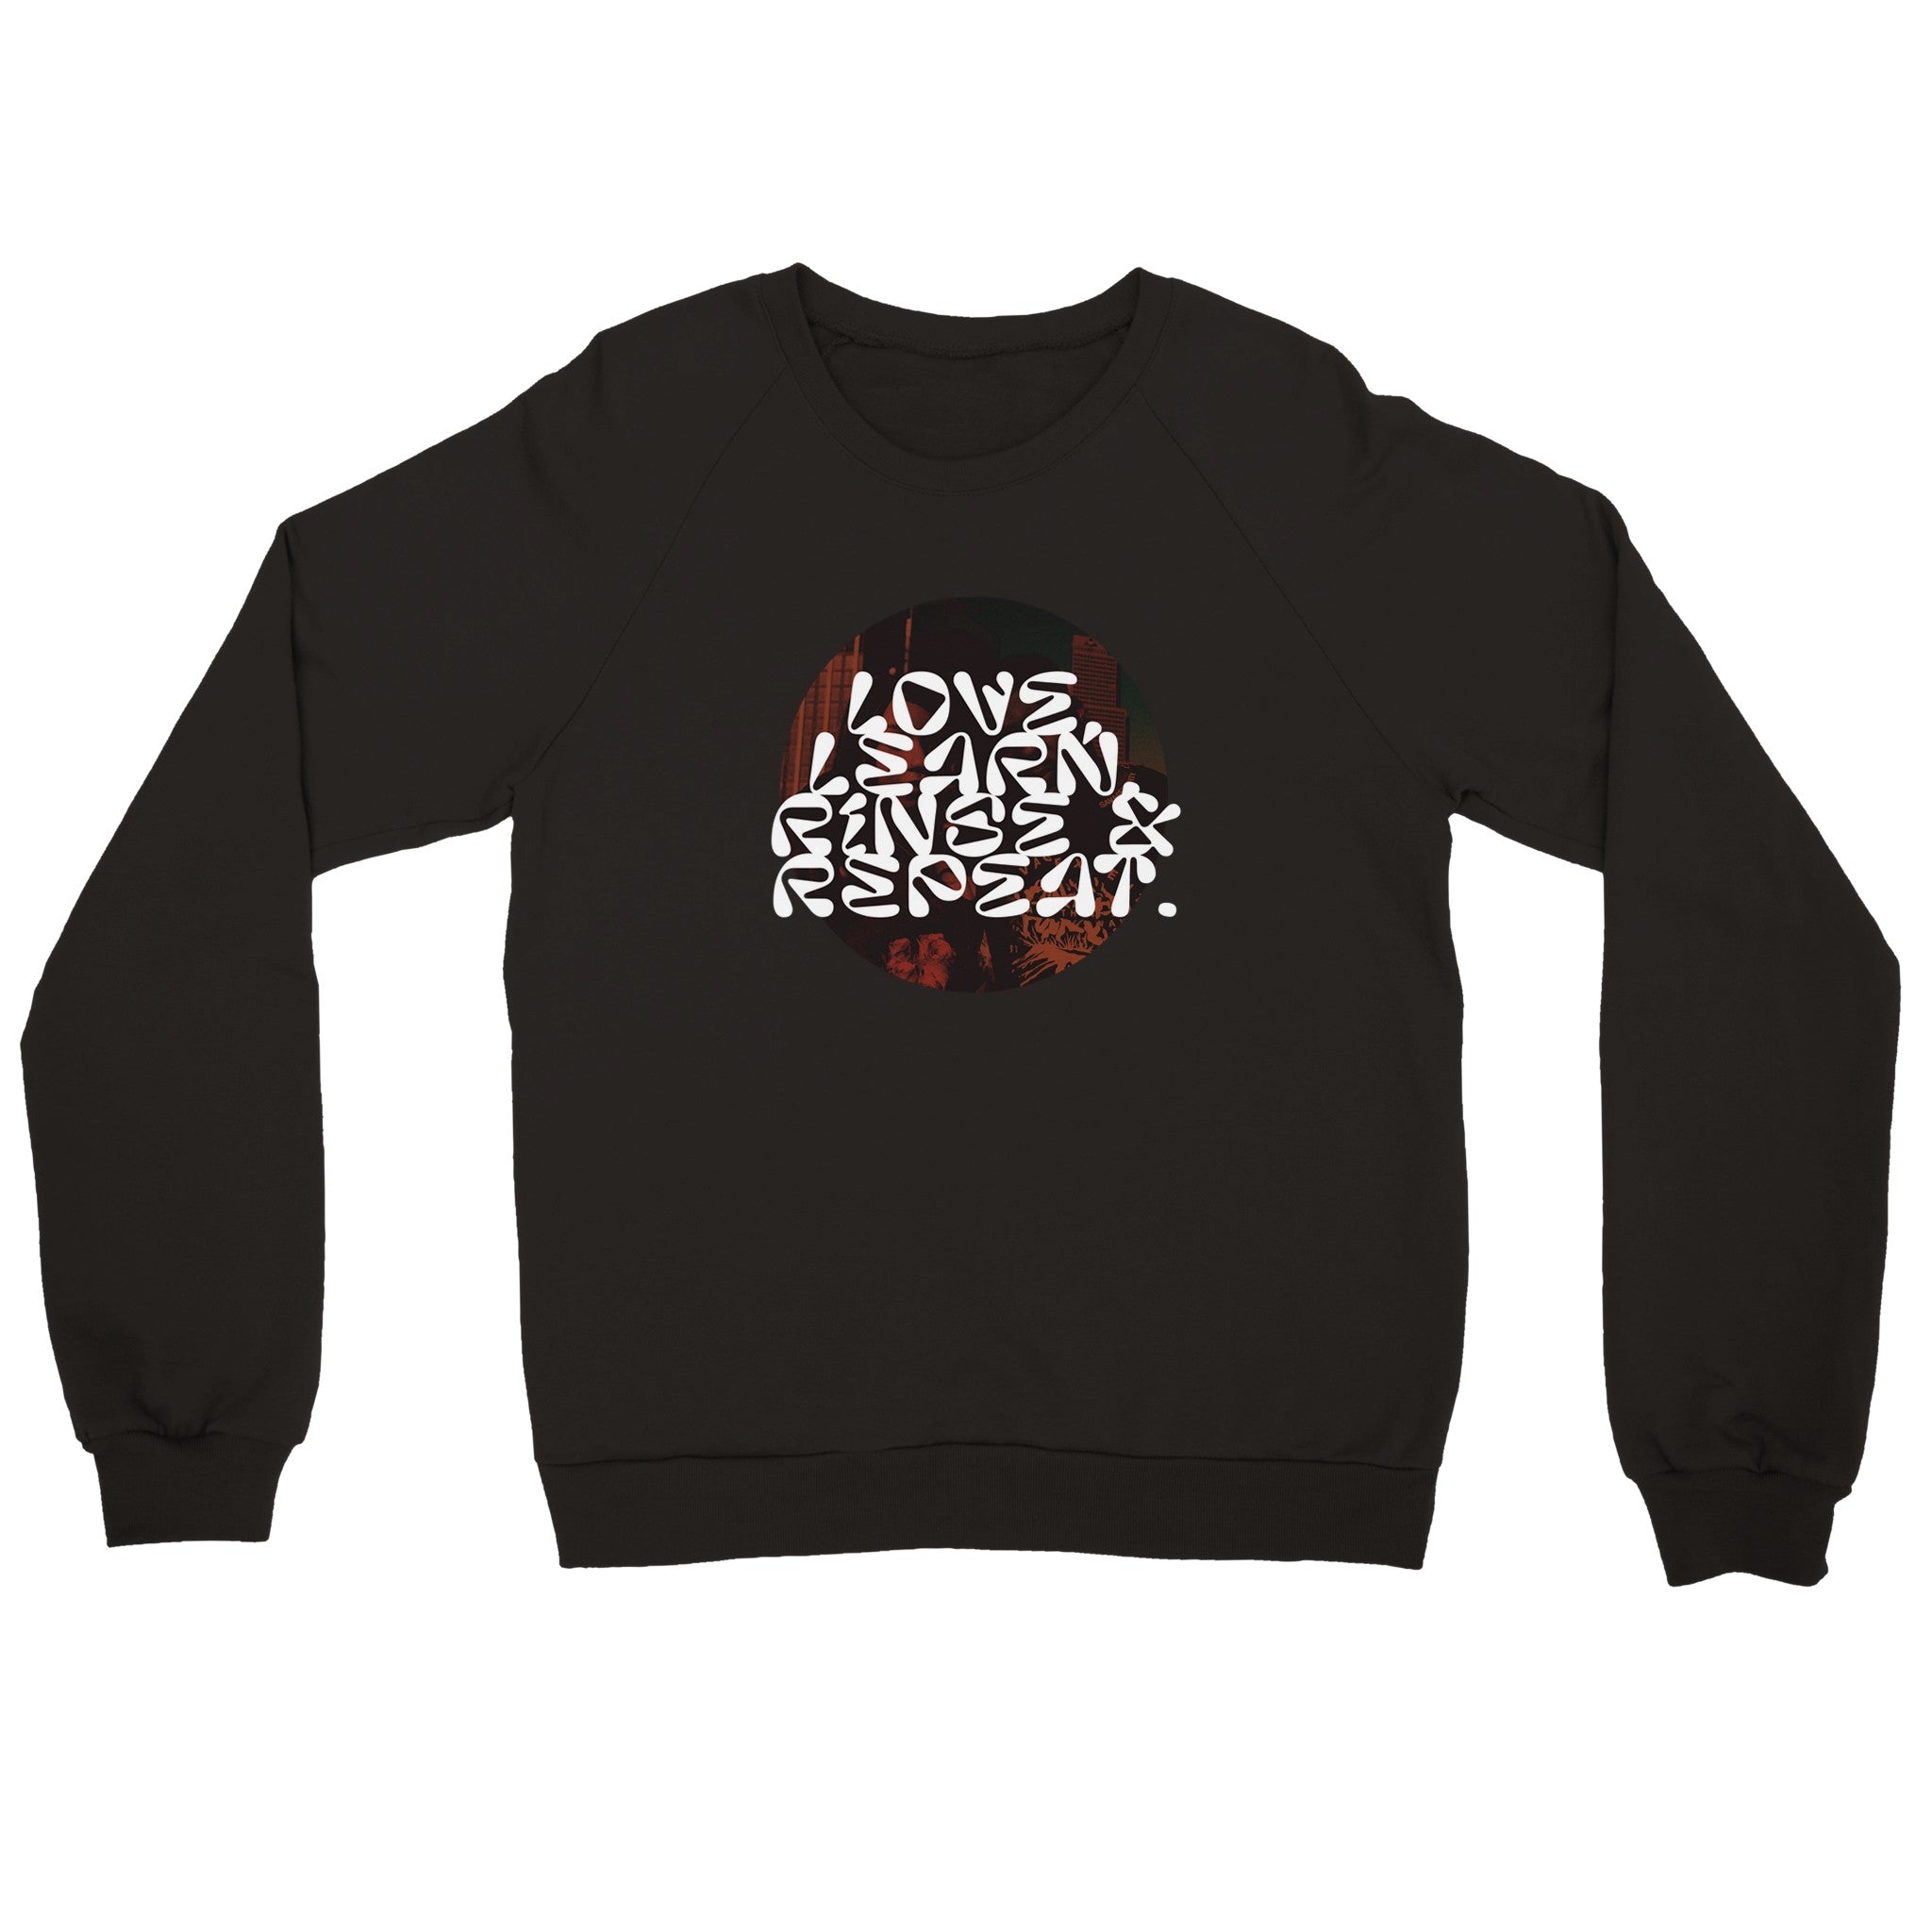 "Rinse & Repeat" - Premium Unisex Crewneck Sweatshirt